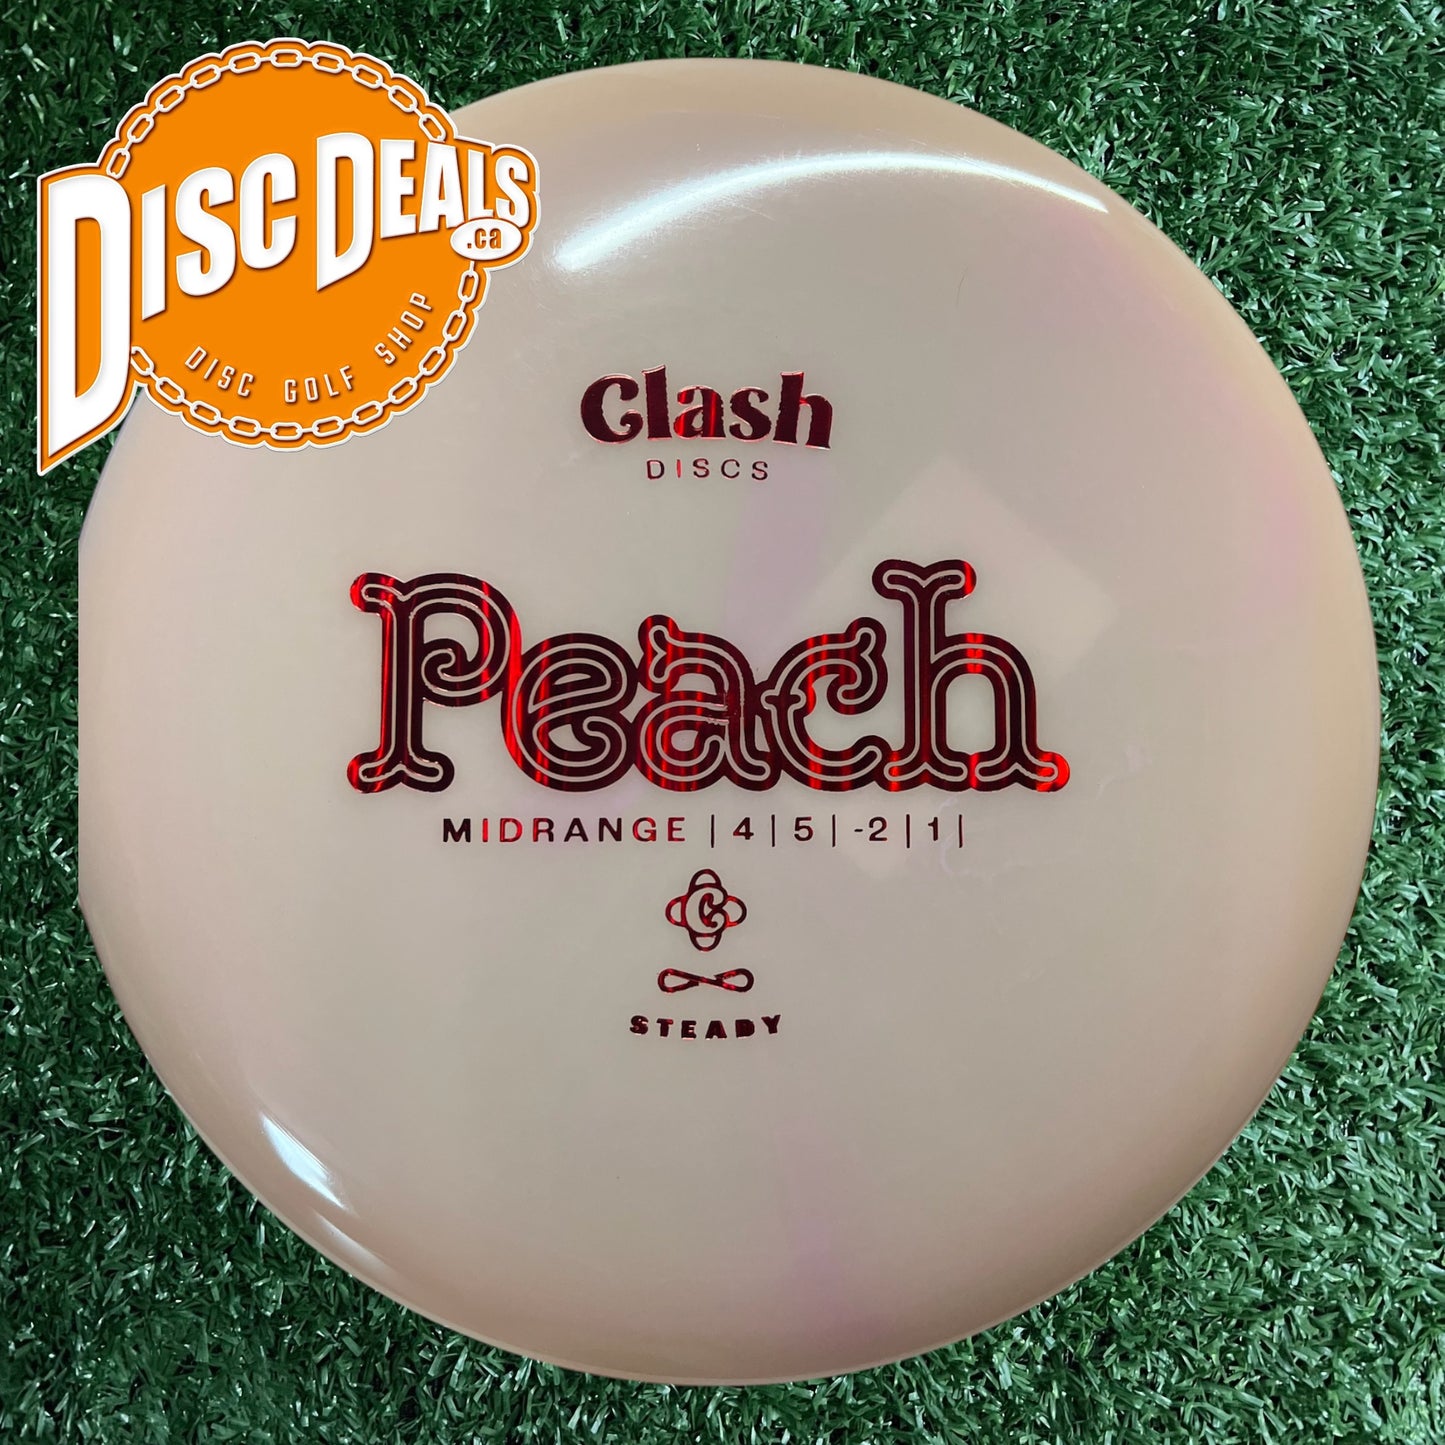 Clash Discs Peach - Steady